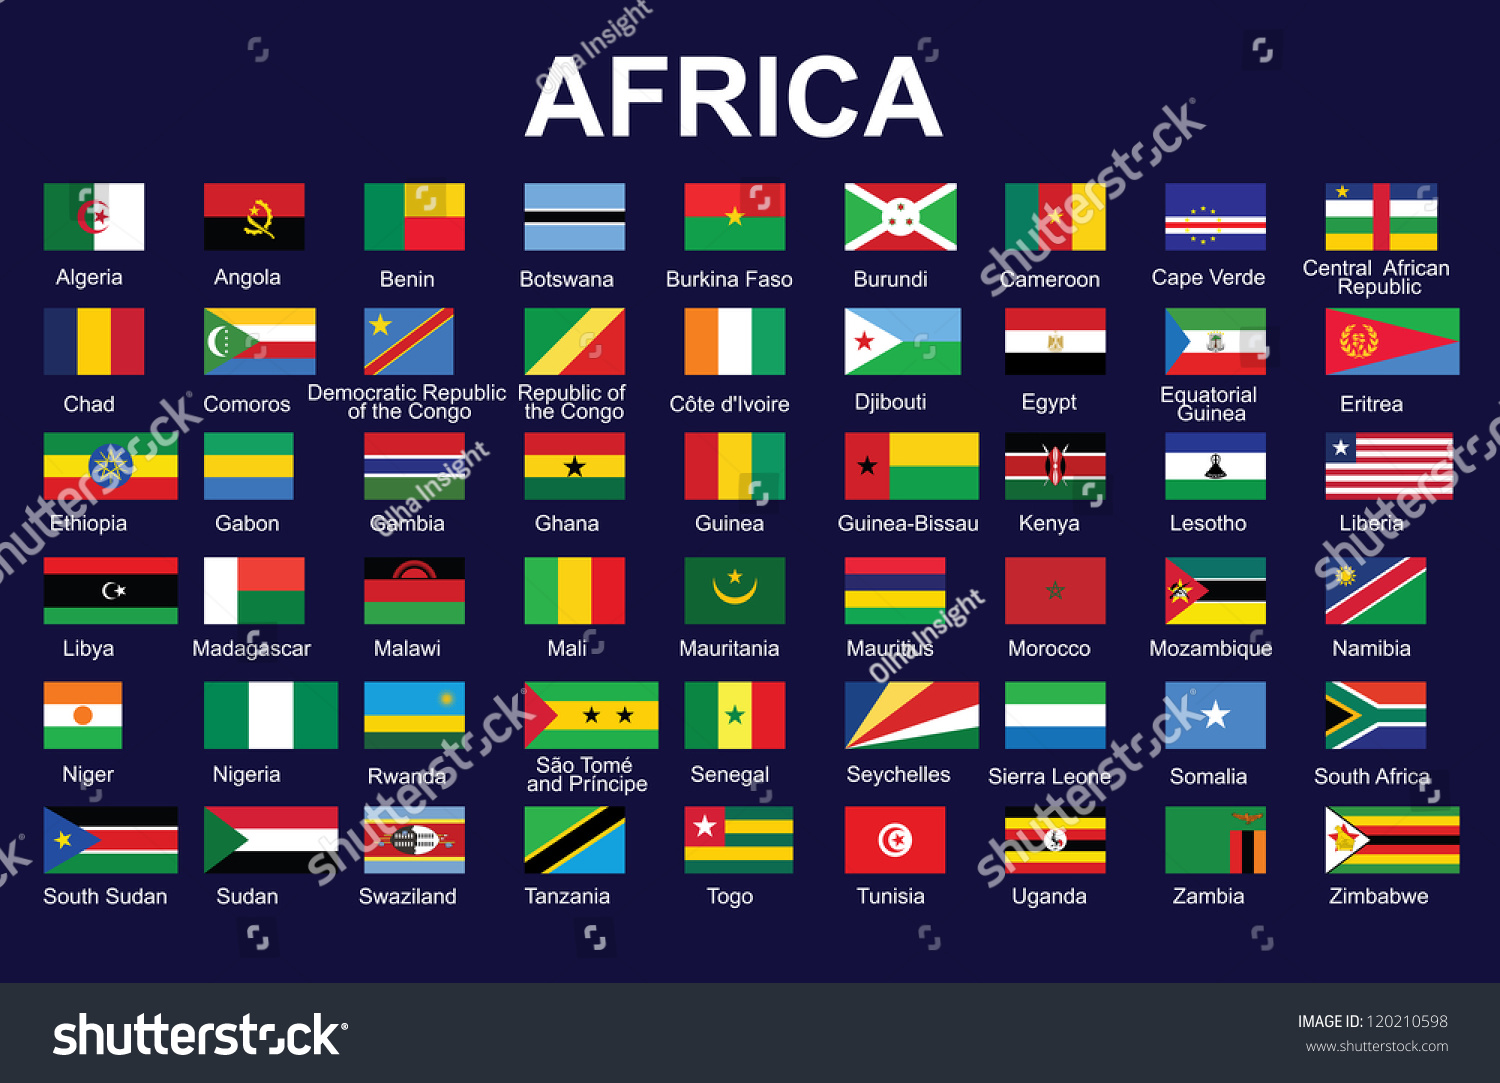 Флаги со звездами какие страны фото и названия